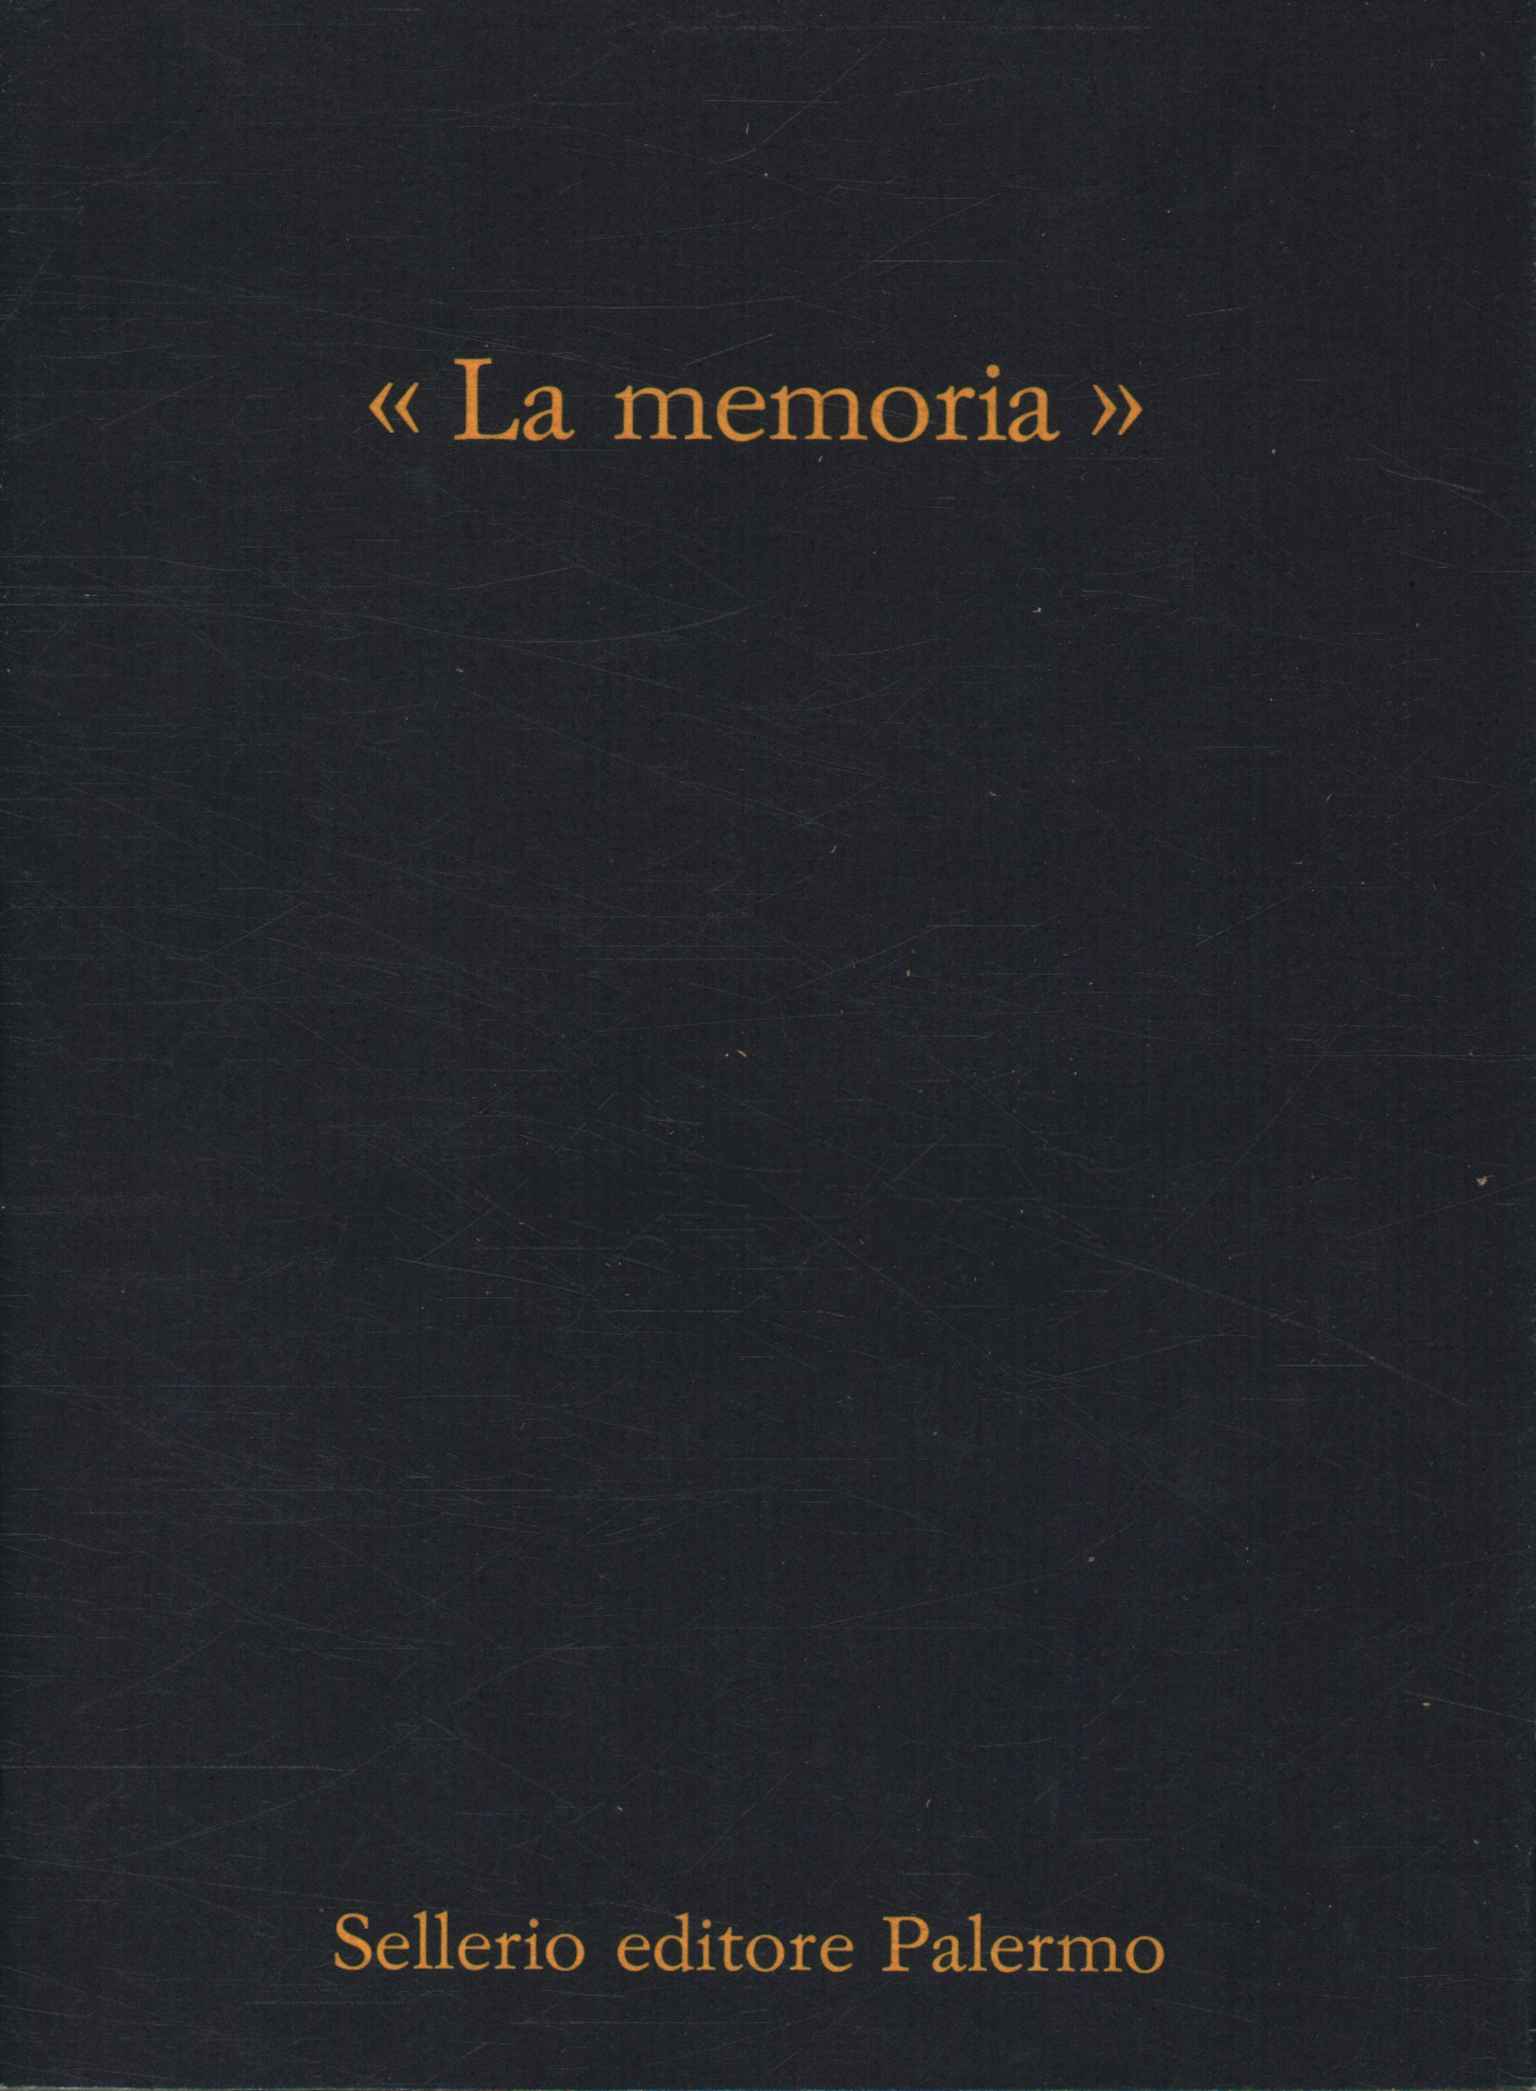 La memoria (1979-1989),La memoria 1979-1989